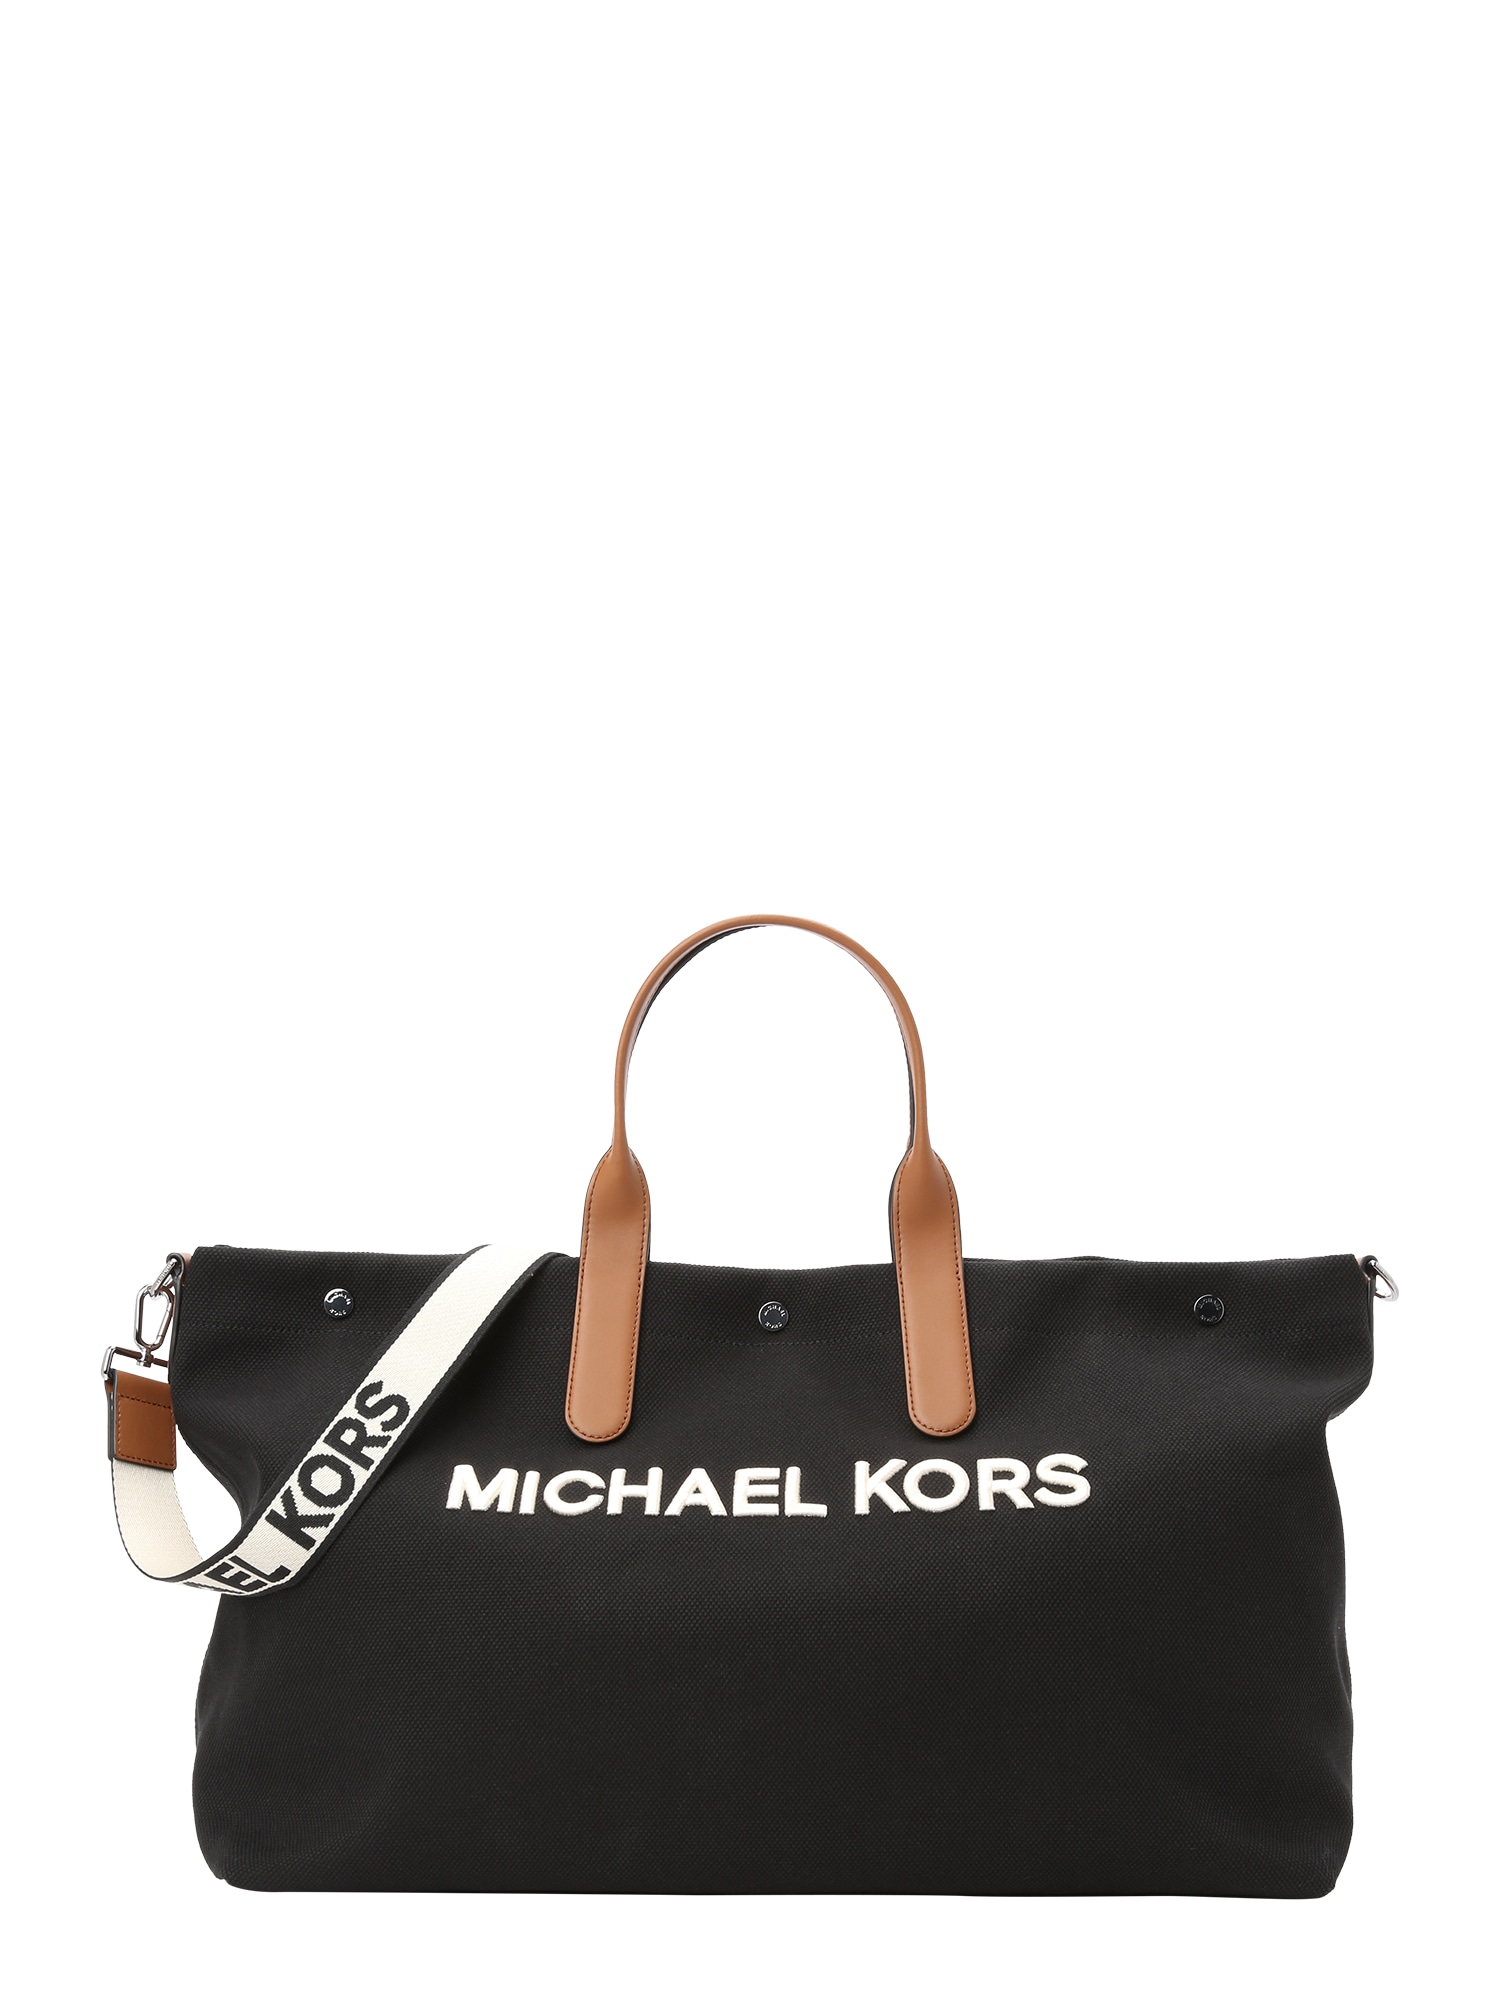 Michael Kors Pirkinių krepšys šviesiai ruda / juoda / balta